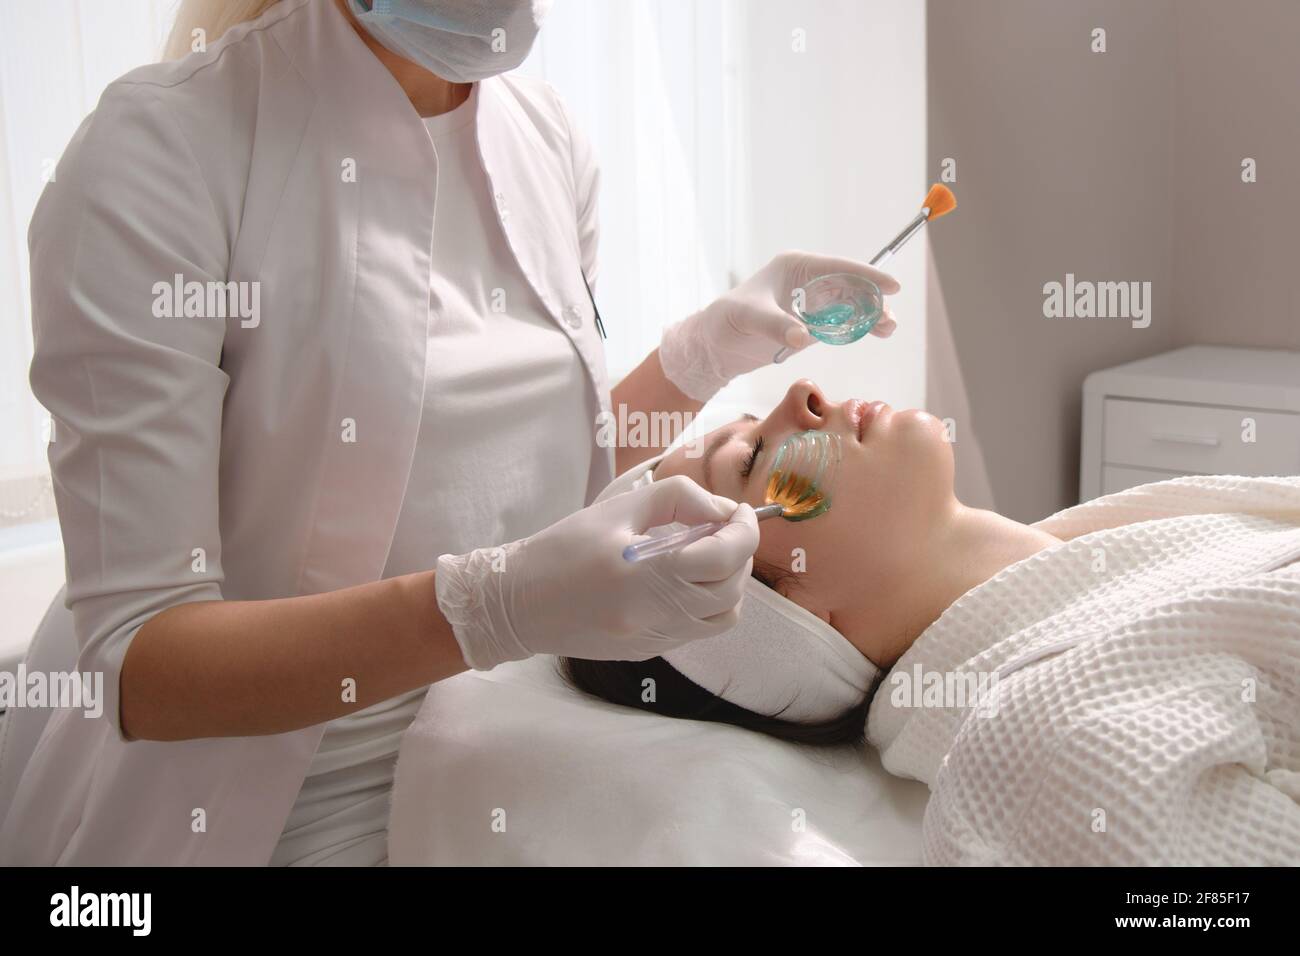 Soin du visage. Un masque est appliqué au visage d'une femme dans une clinique de cosmétologie. Gros plan Banque D'Images